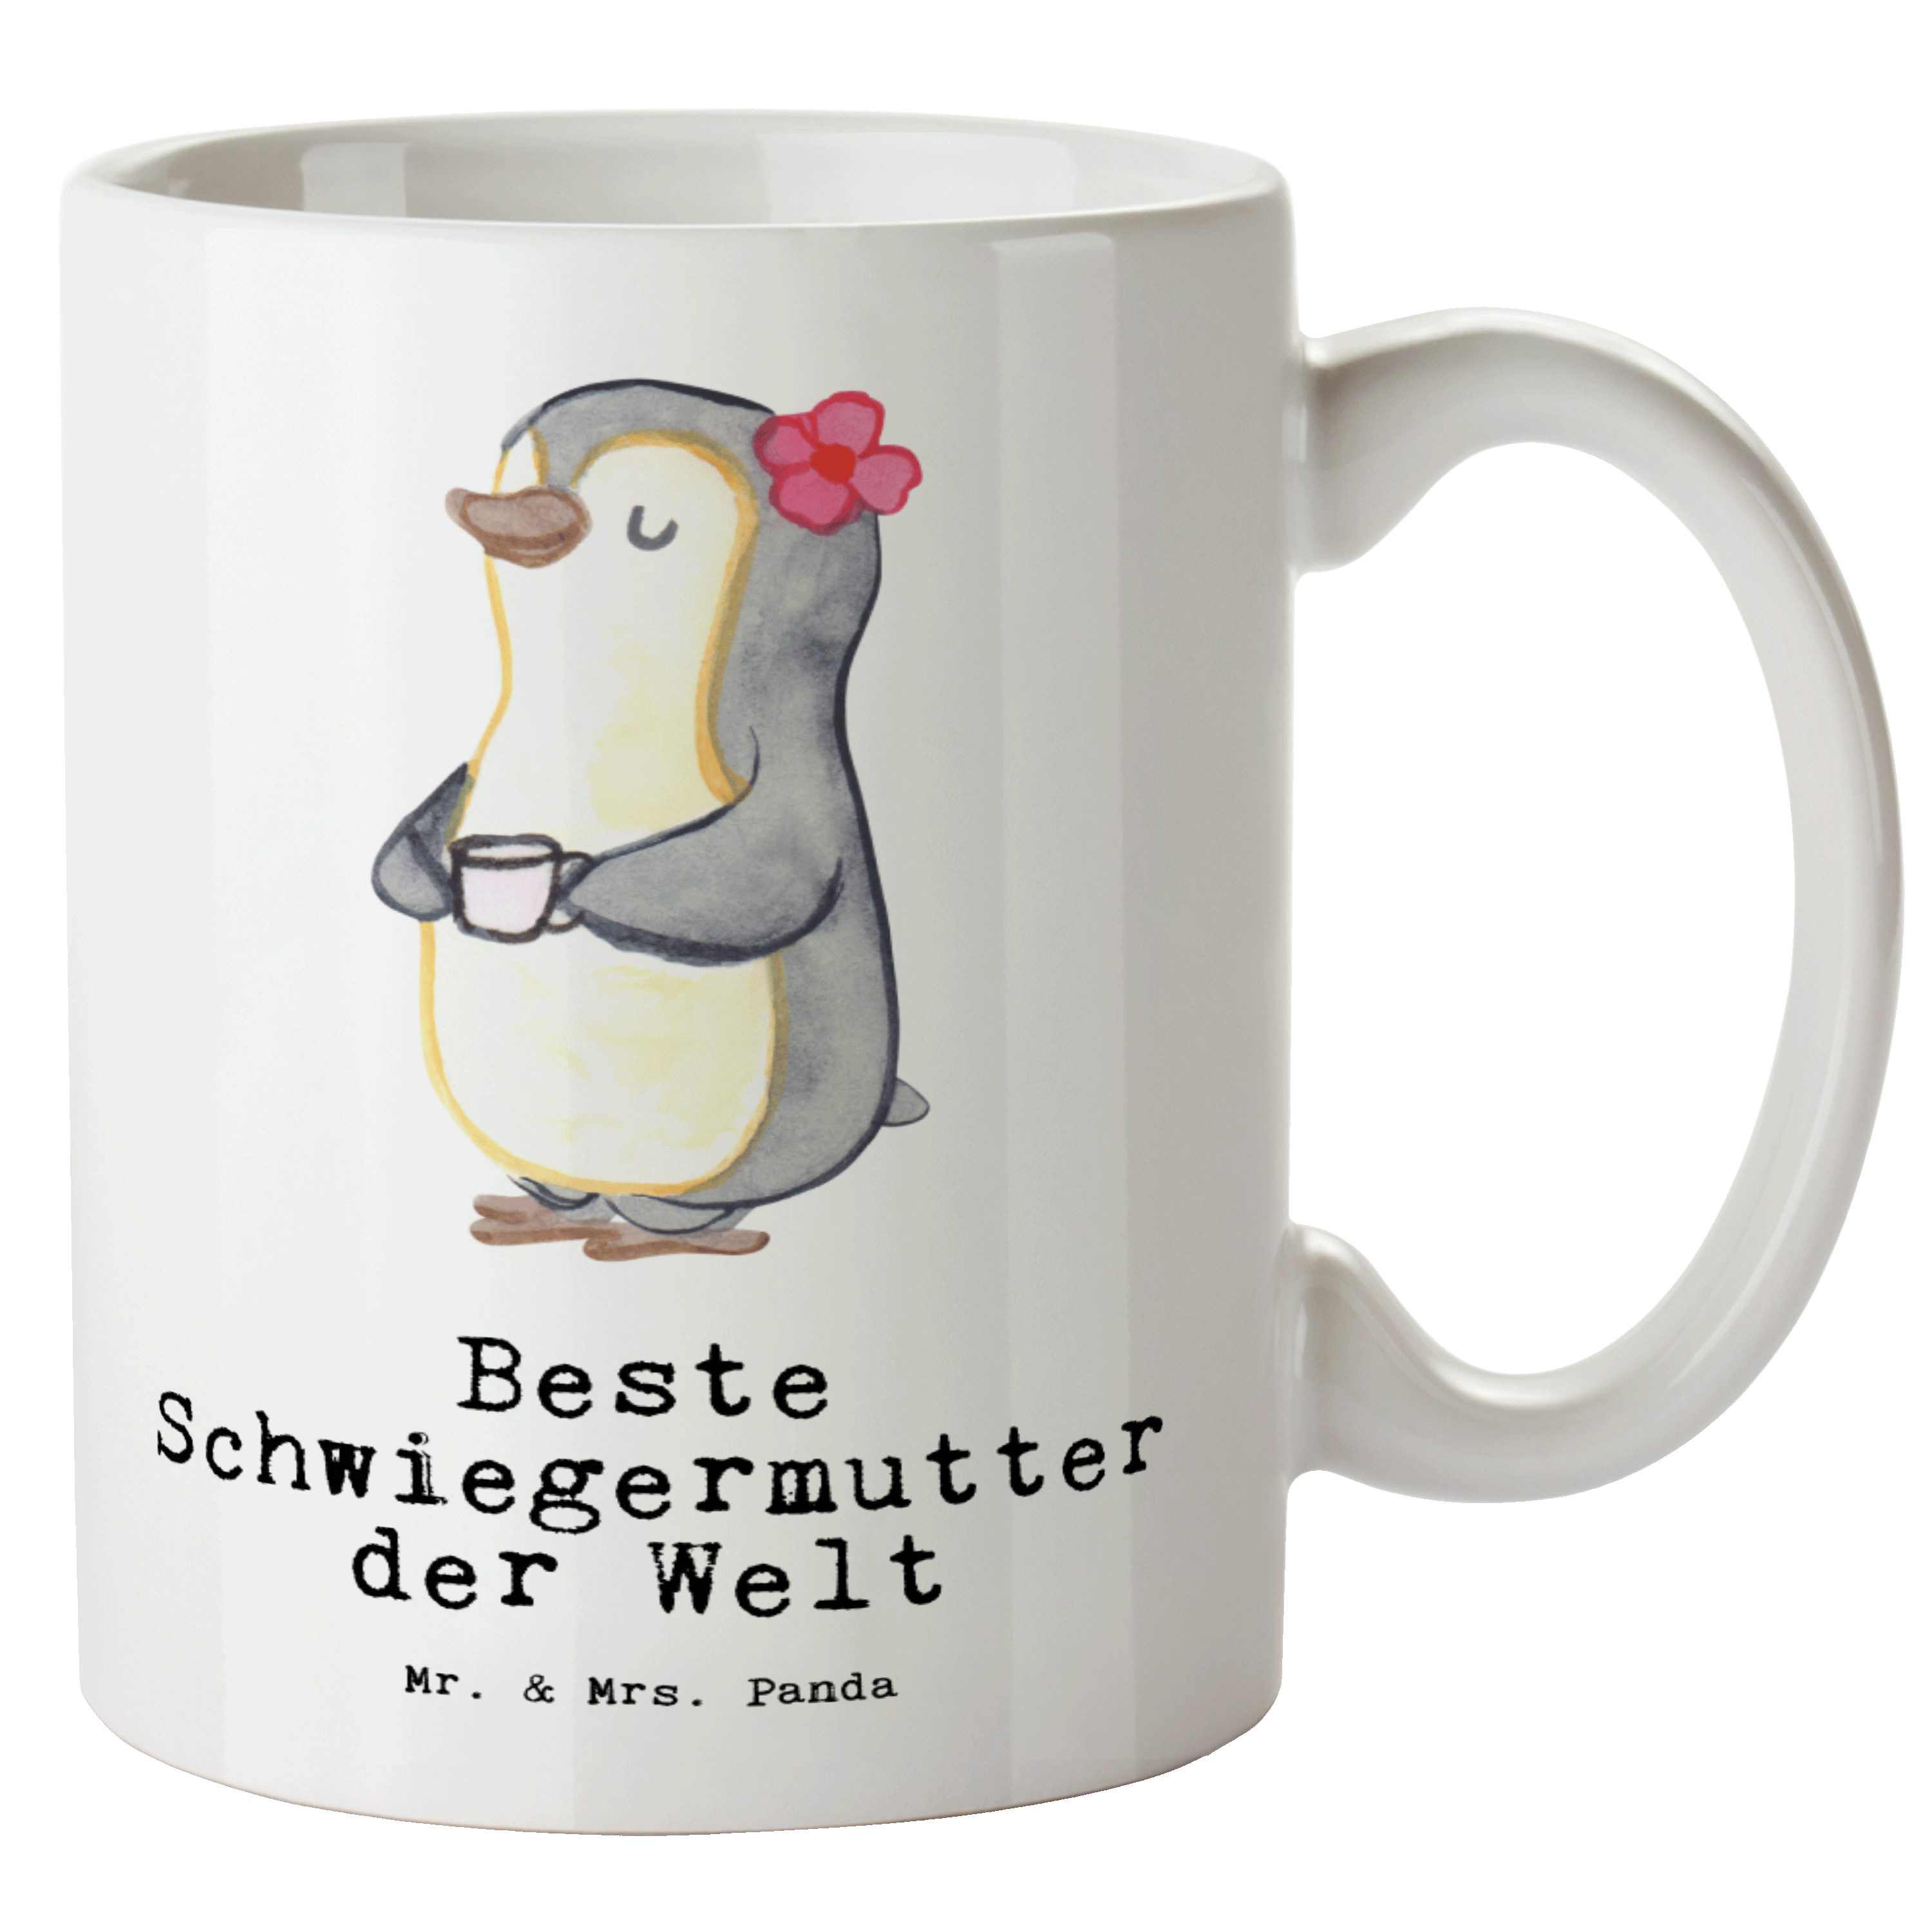 Mr. & Mrs. Panda Tasse Pinguin Beste Schwiegermutter der Welt - Weiß - Geschenk, Danke, Gesc, XL Tasse Keramik